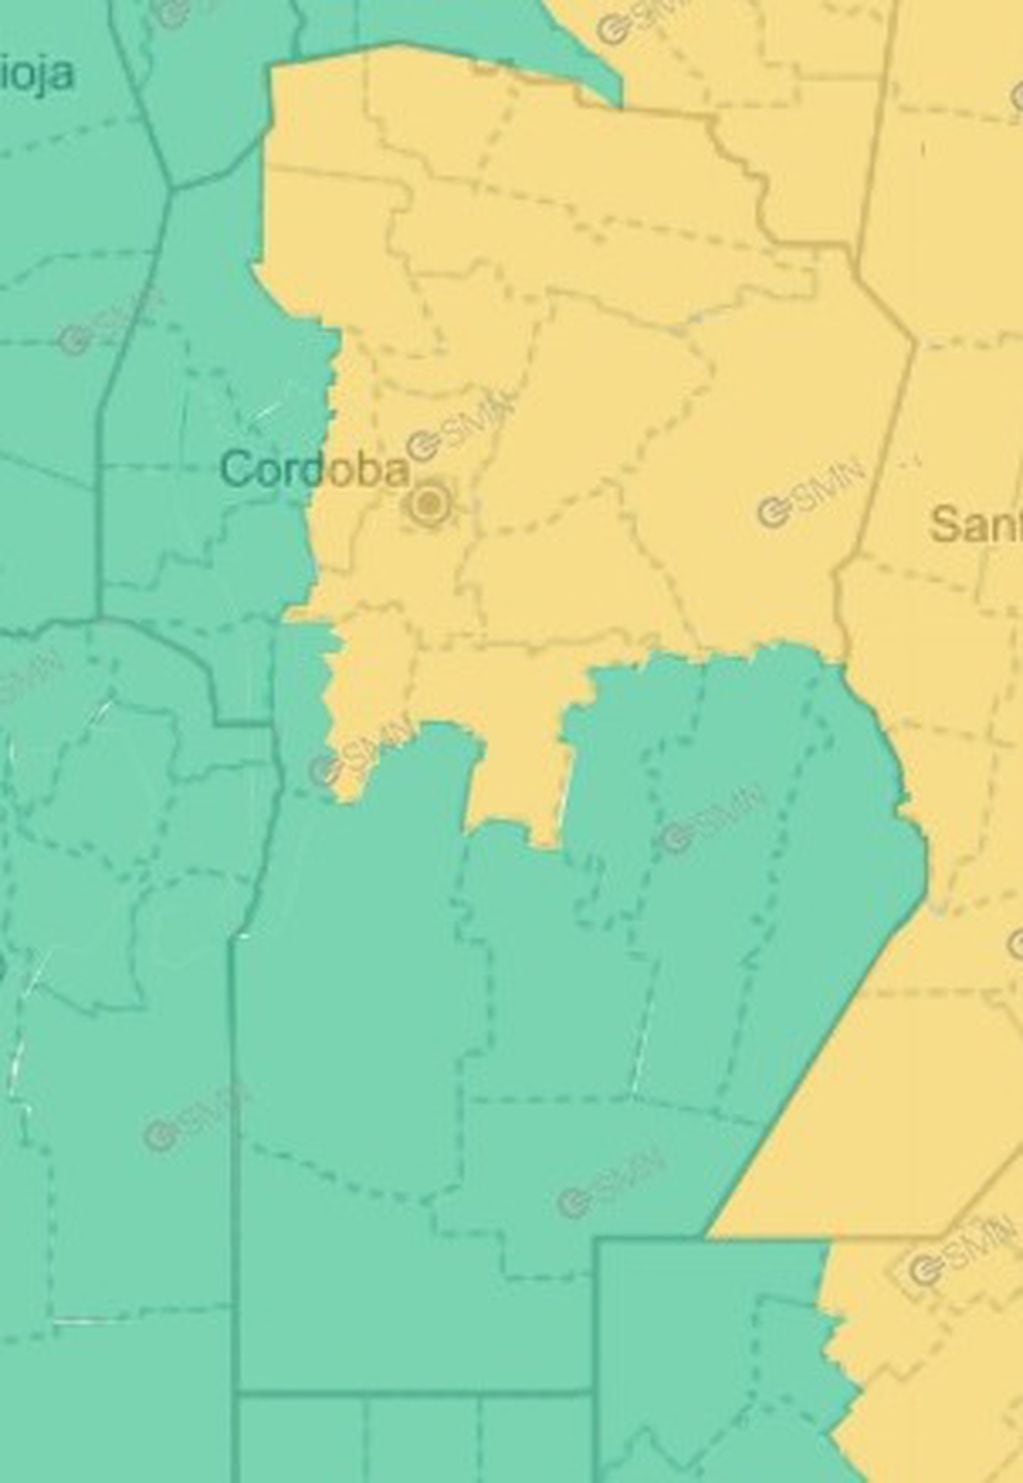 El alerta amarilla por altas temperaturas para Córdoba.